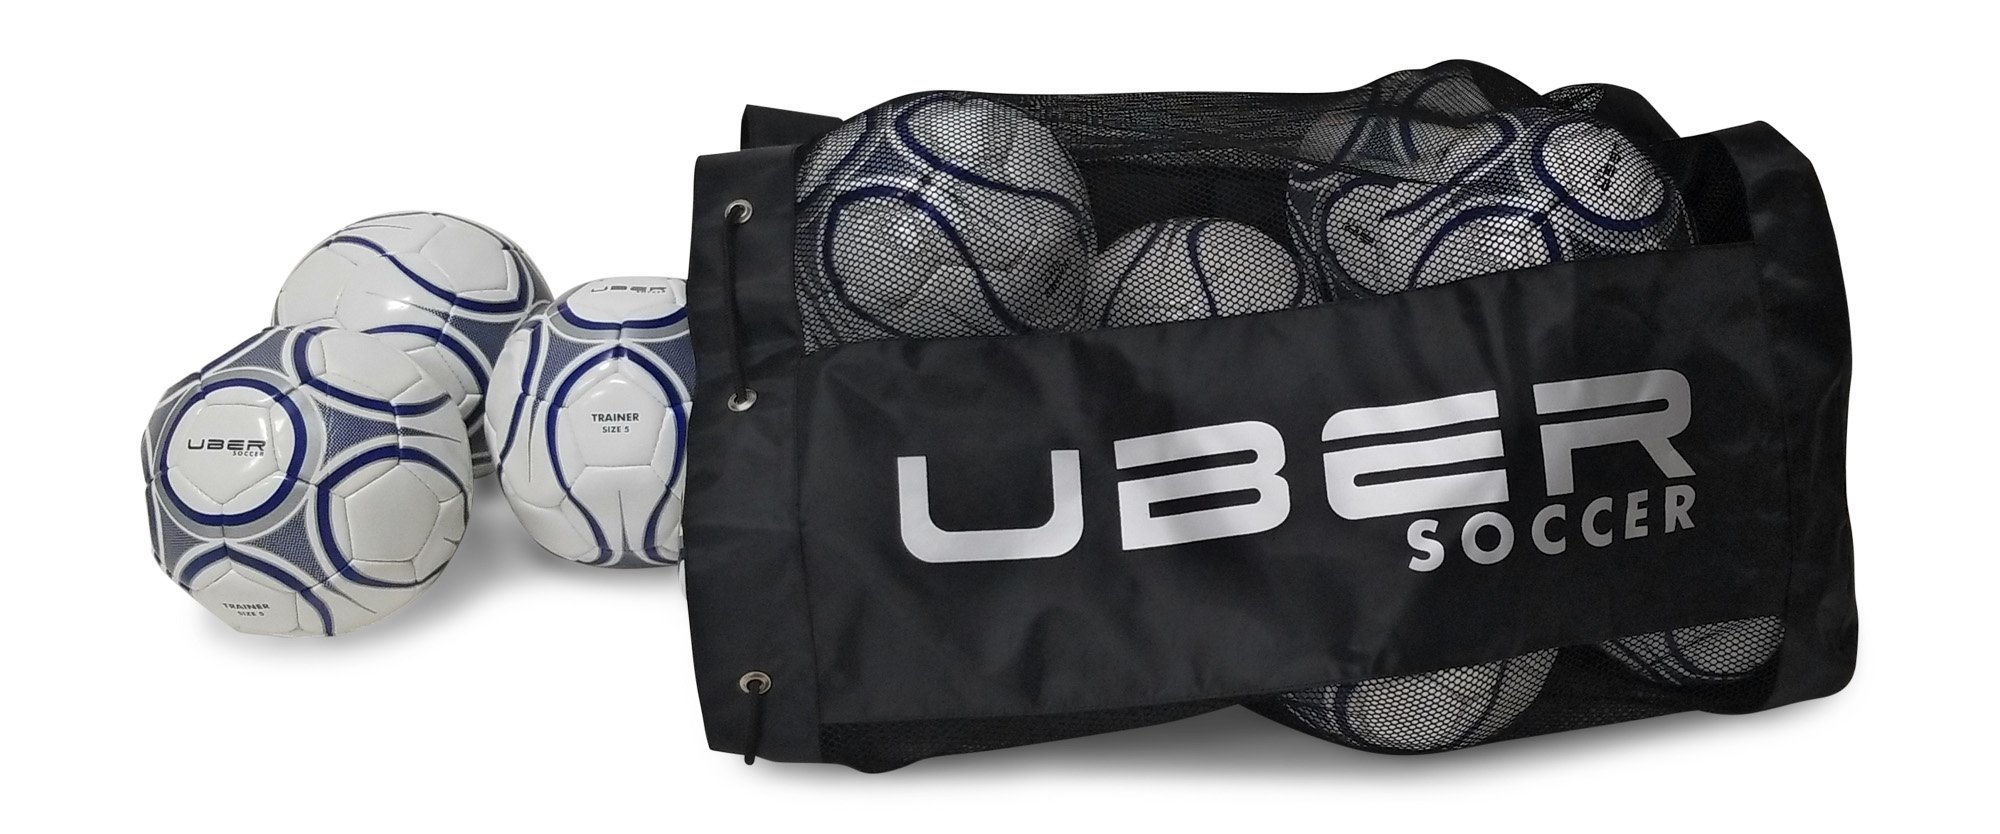 Dicks sporting goods soccer ball bag